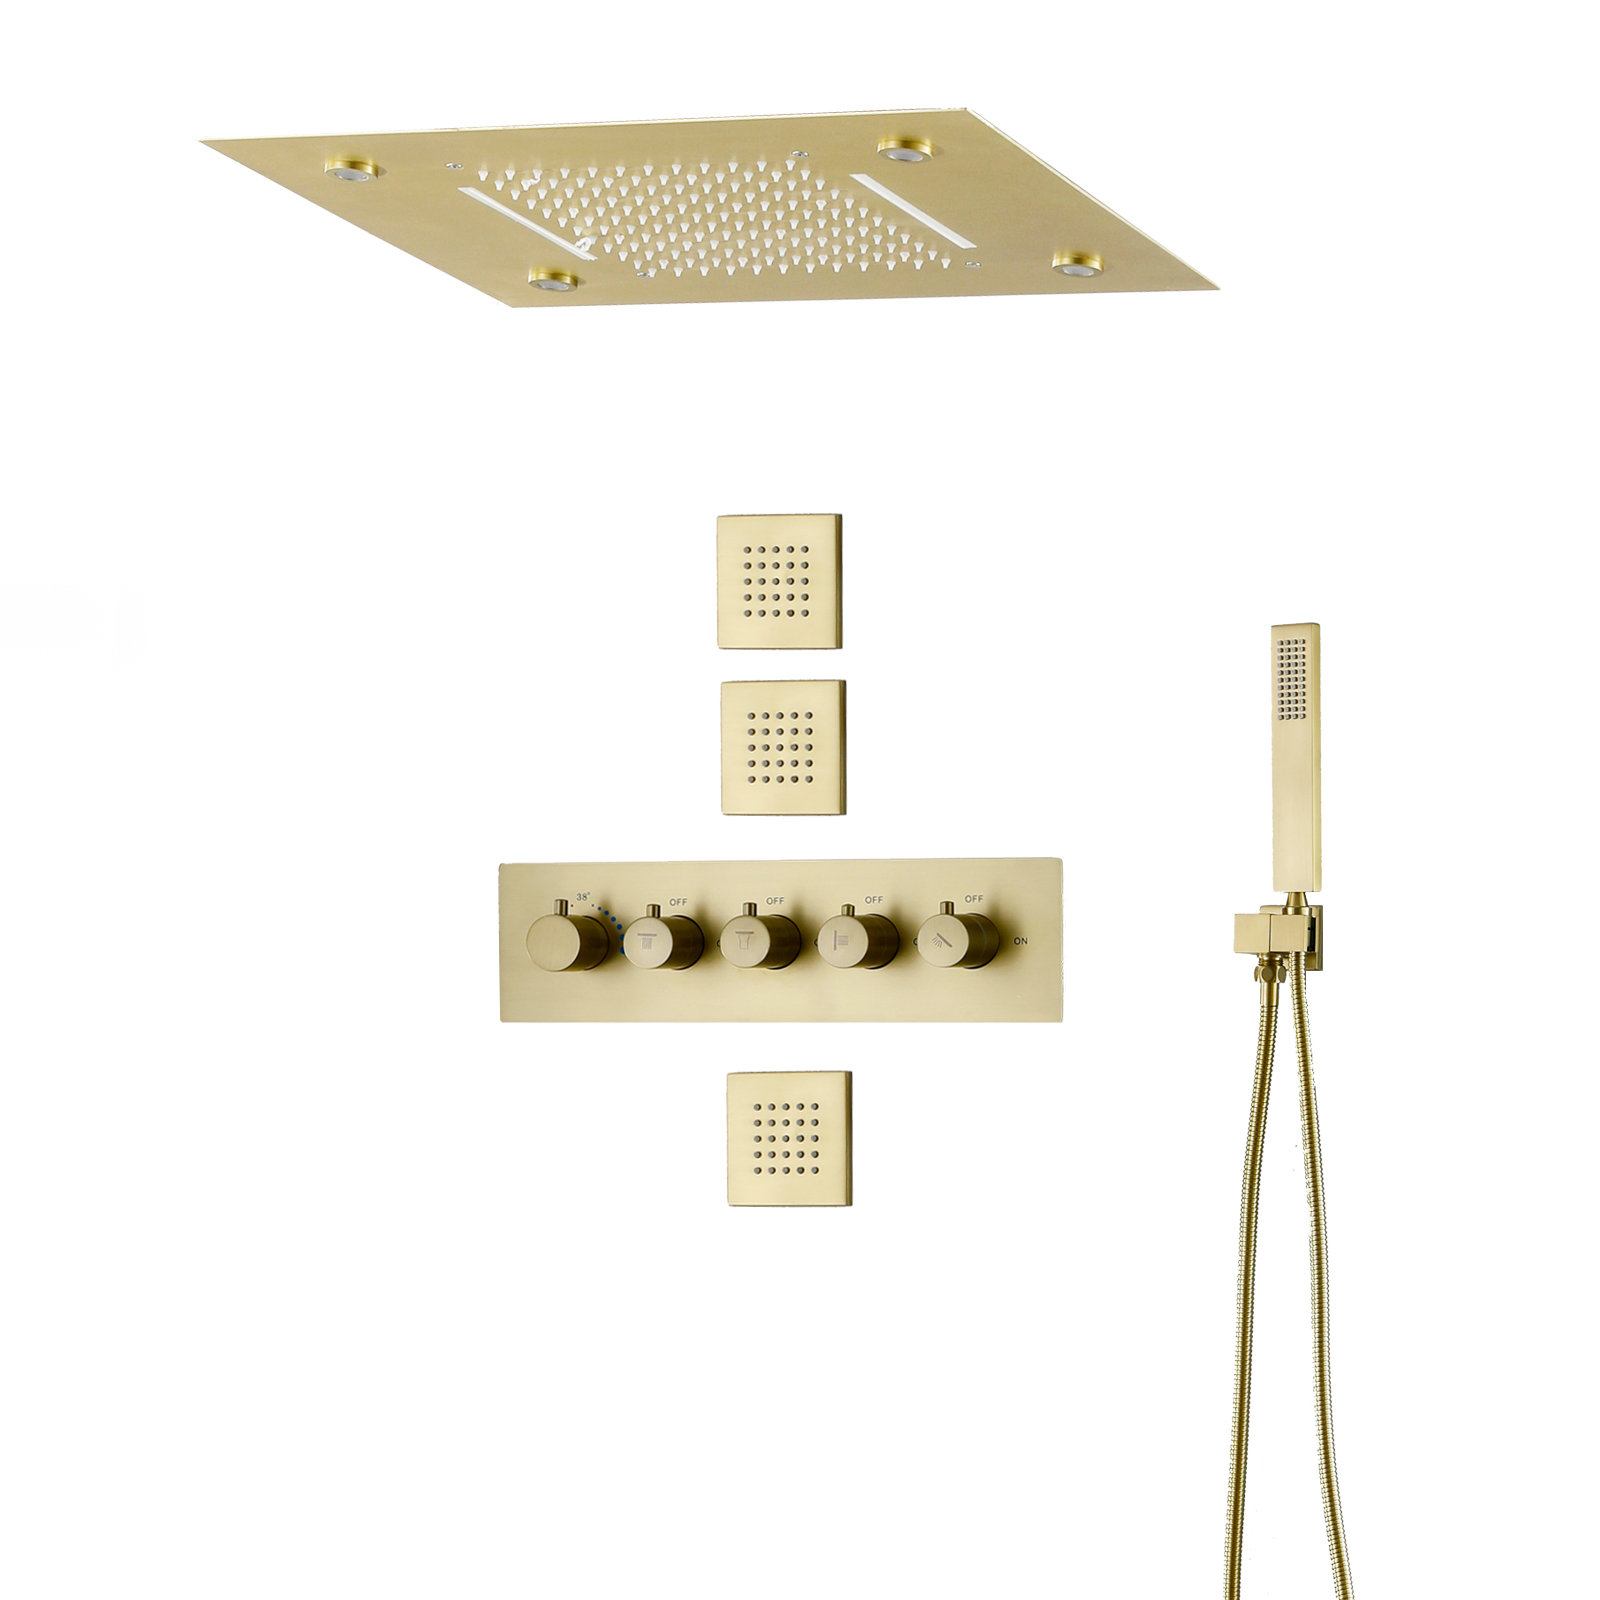 Sistema de ducha de lluvia termostática de oro cepillado mezclador de baño con cabezal de ducha tipo lluvia en cascada LED de 14 x 20 pulgadas